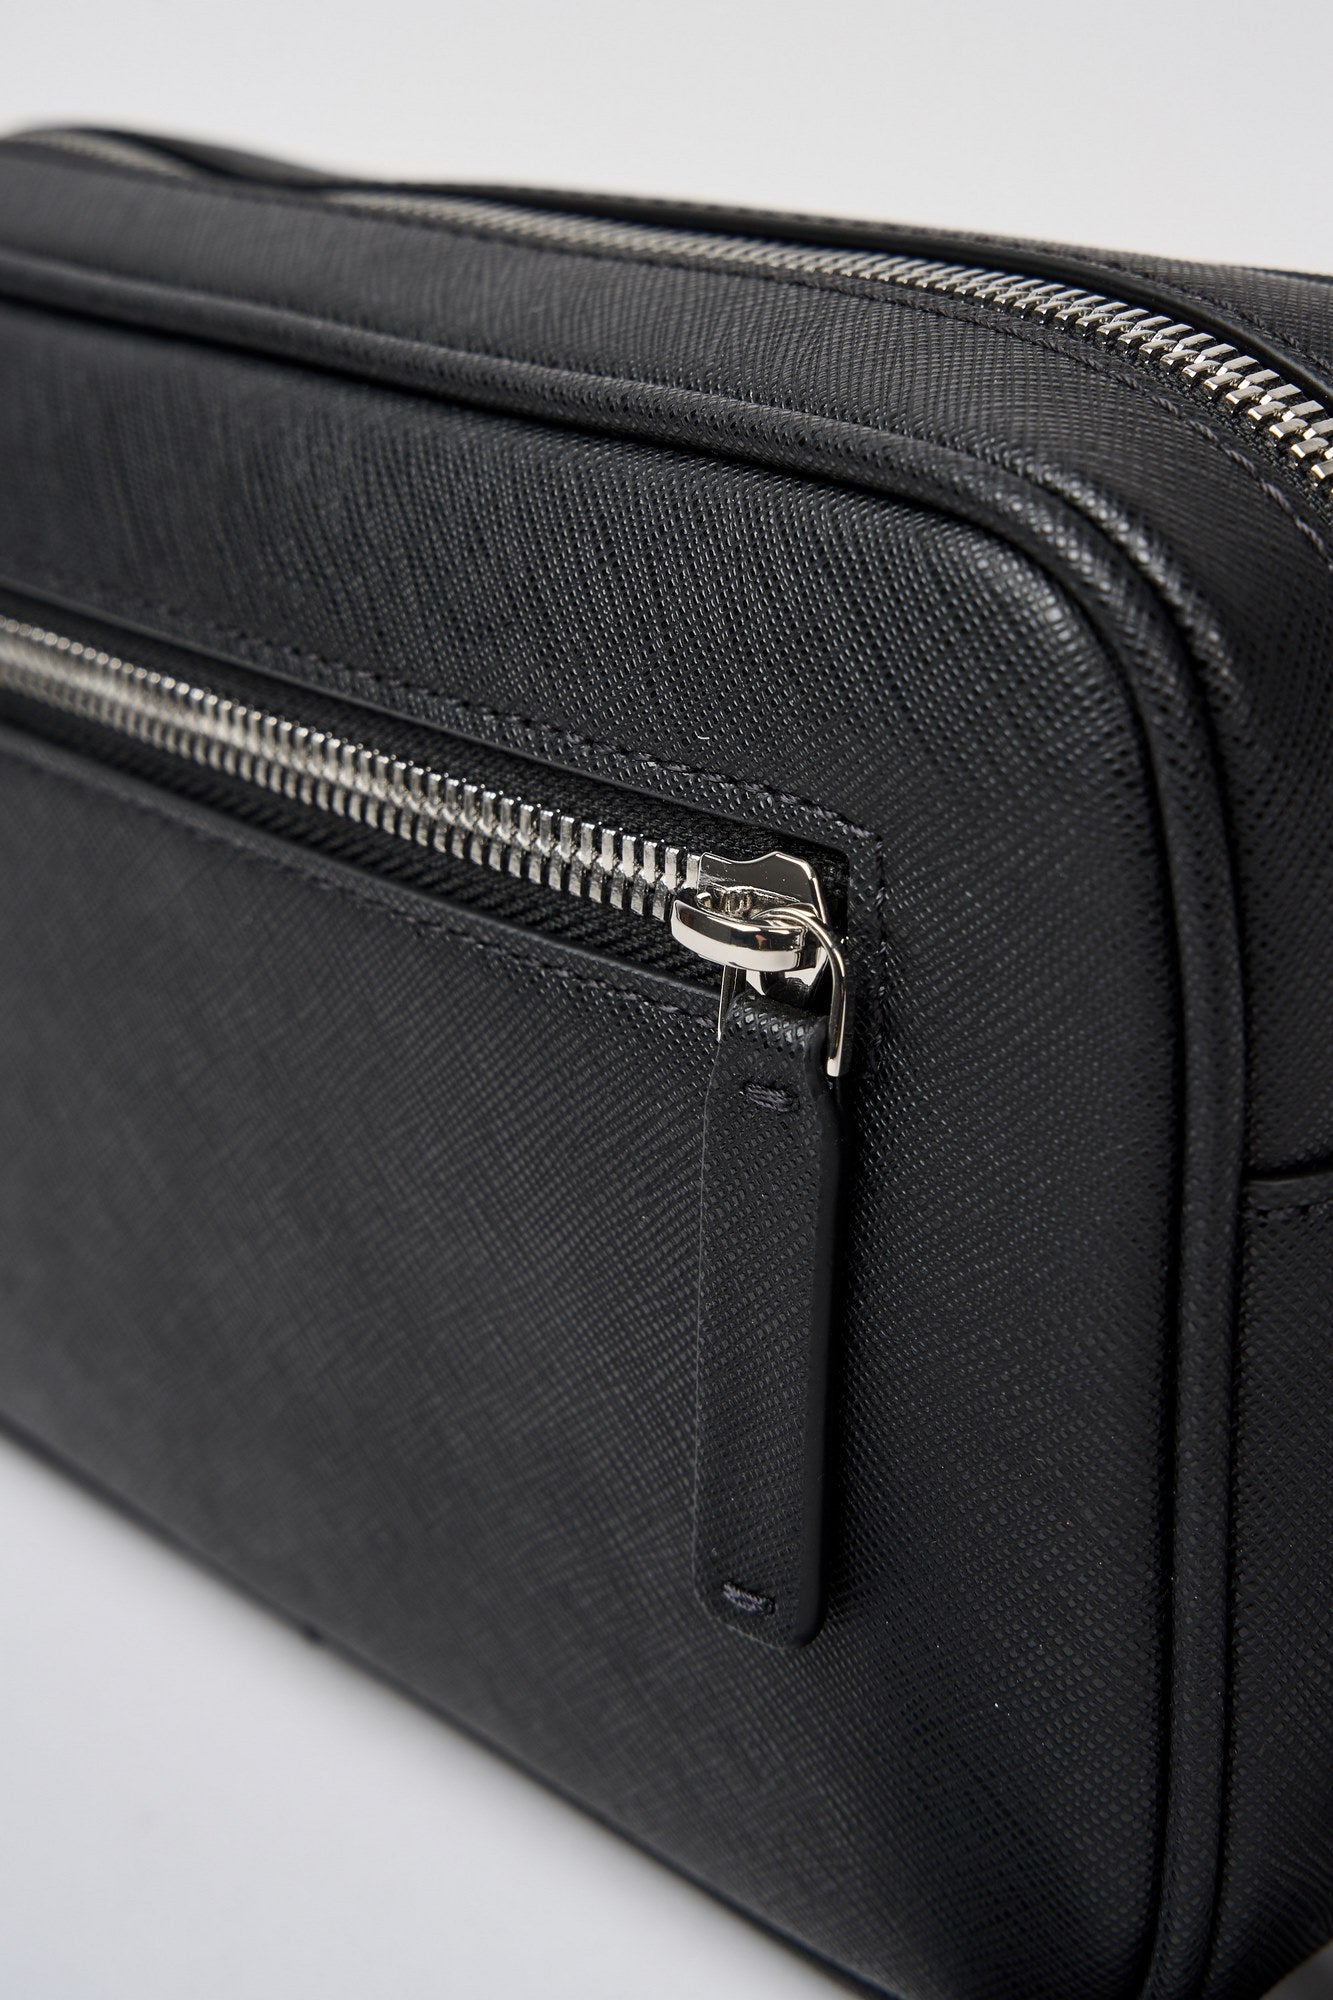 Emporio Armani Regenerated Leather Saffiano Beauty Case Black-5